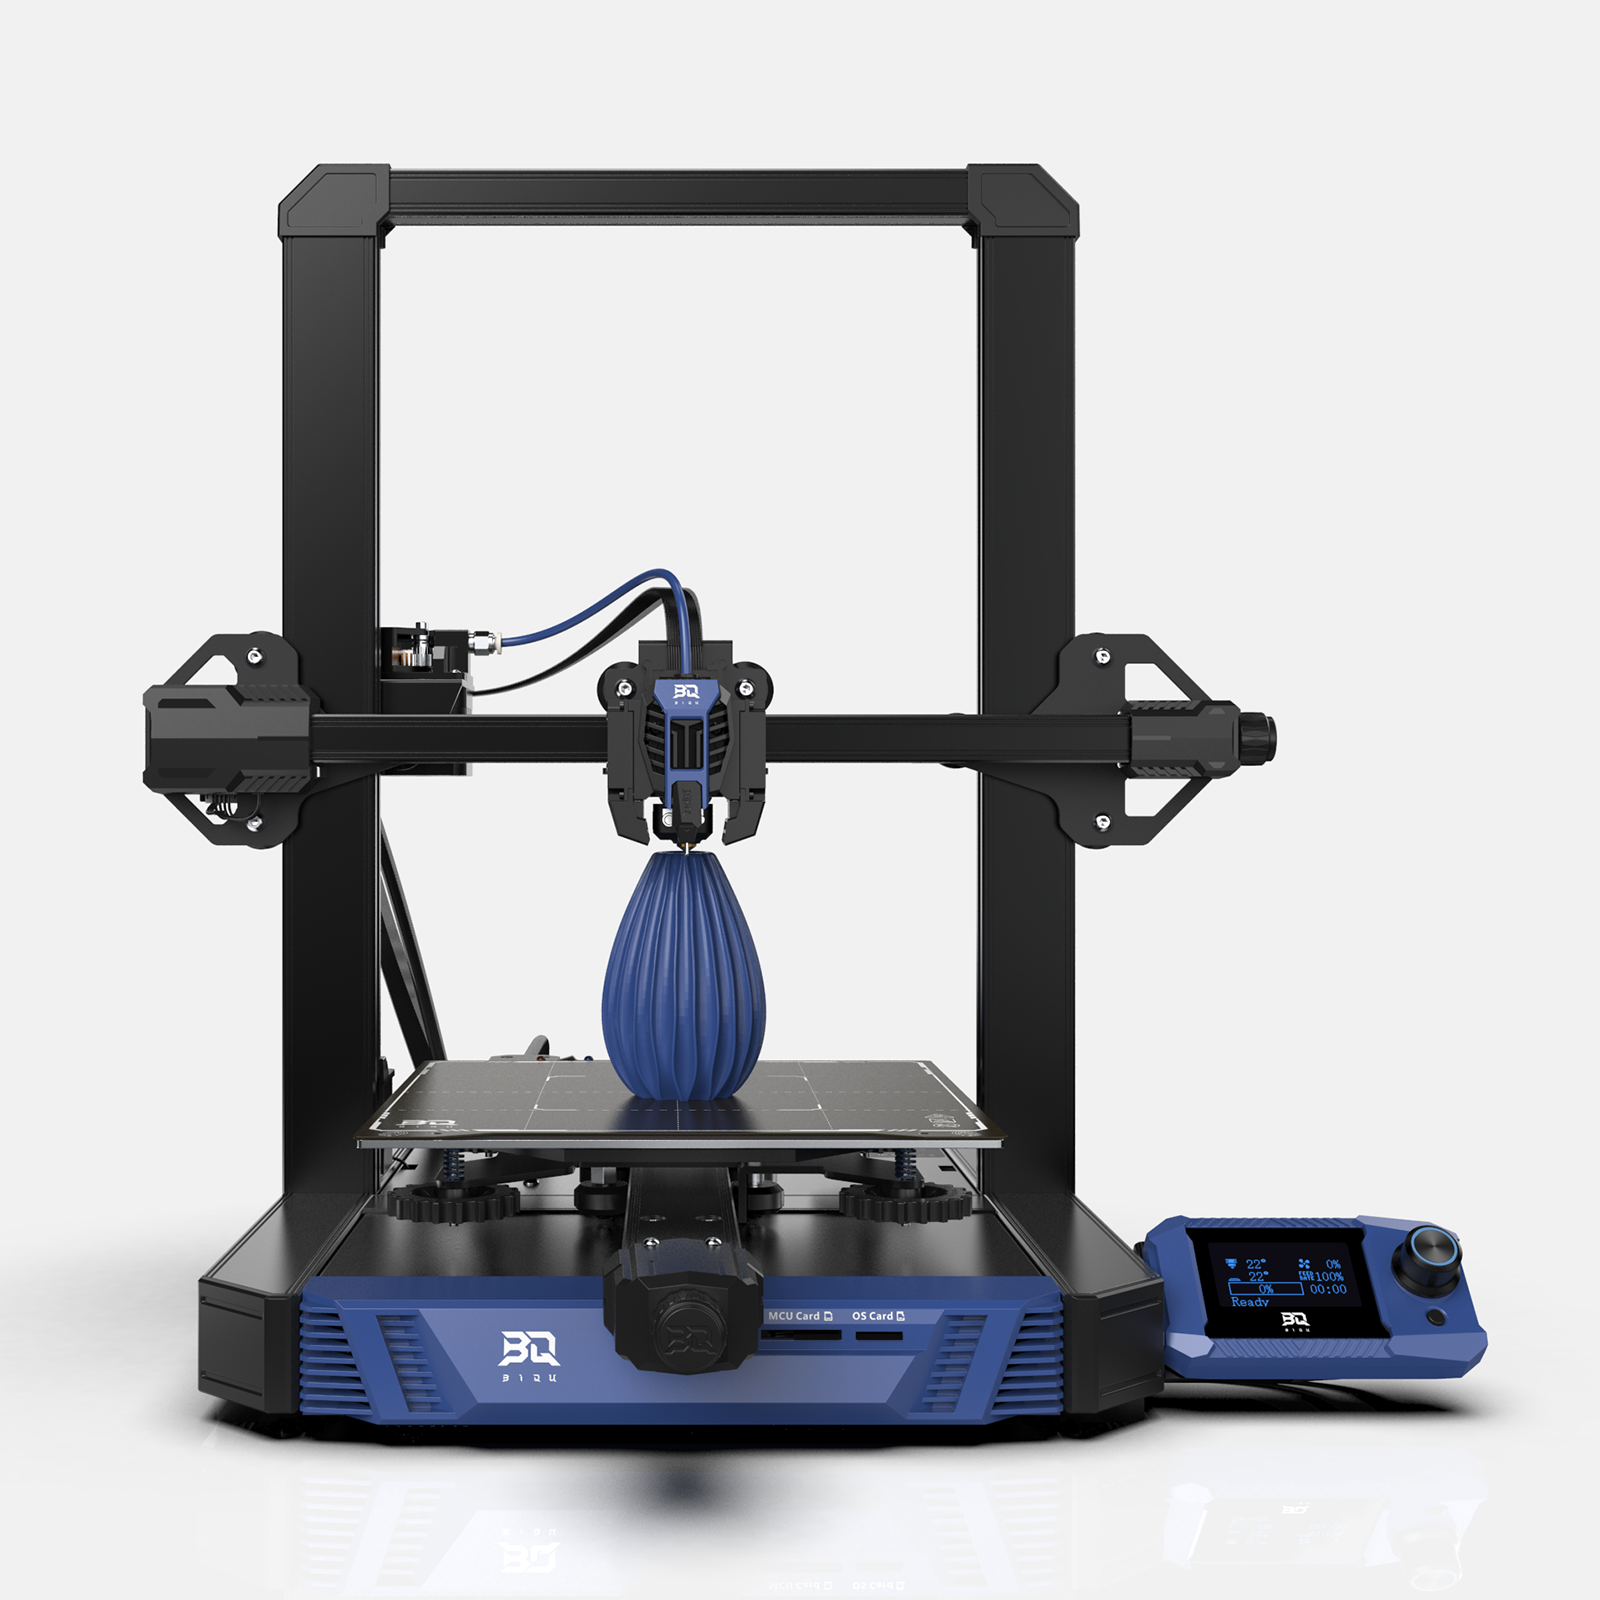 BIQU 3D Printer – Biqu Equipment